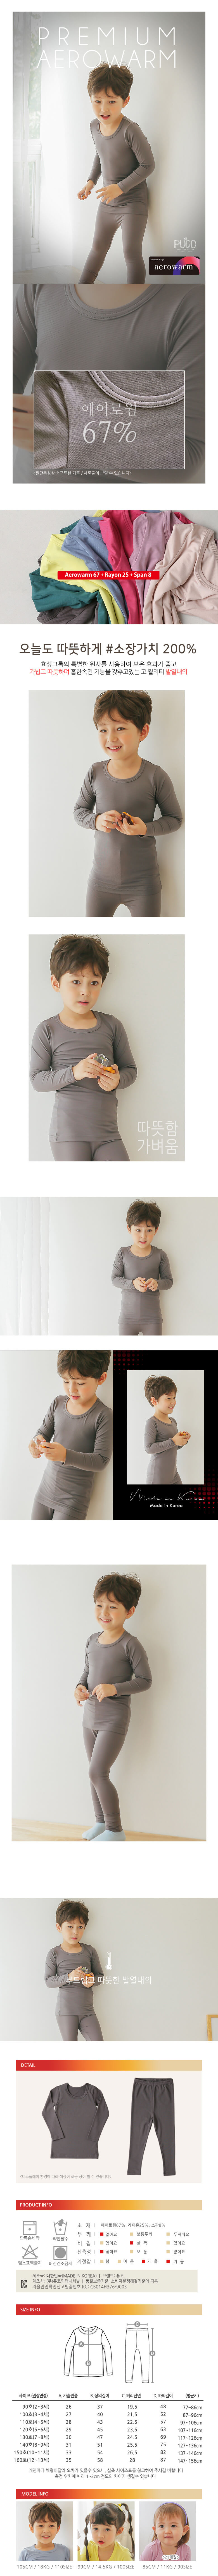 韓國製發熱衣家居服(上衣+褲子)-灰色